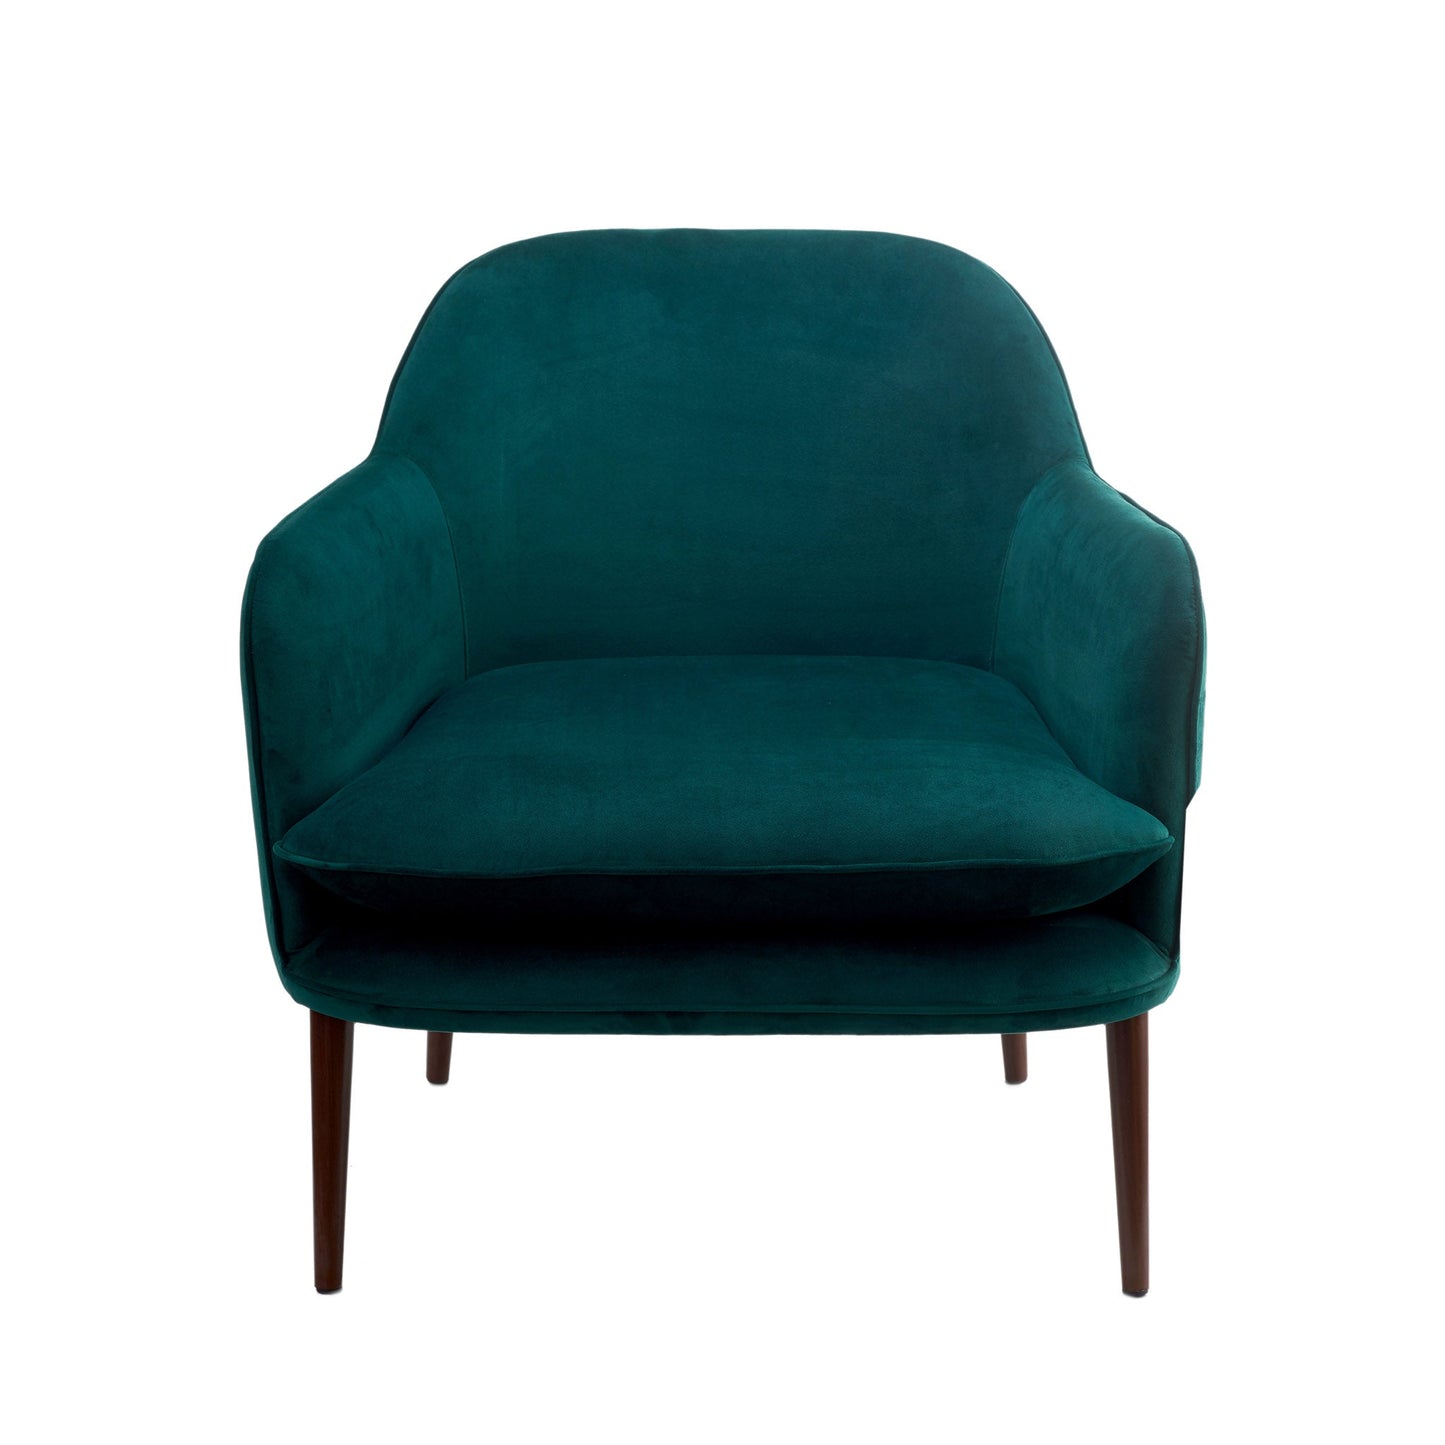 Stilvoller und gemütlicher Sessel mit Samtbezug - Grün - Vandeley